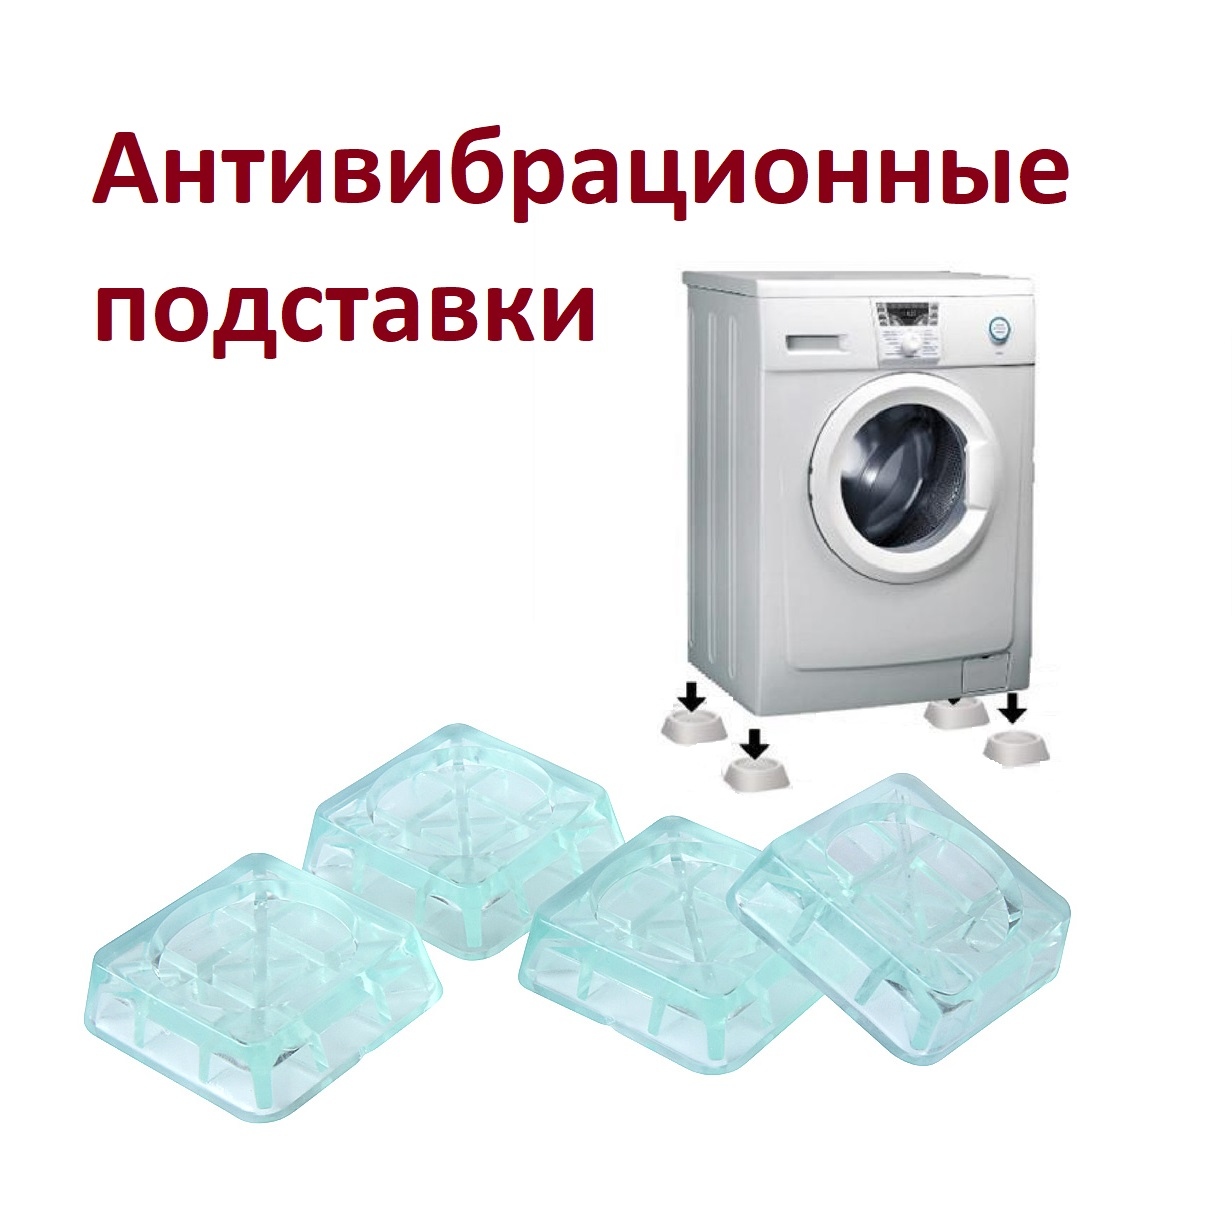 Купить Антивибрационные подставки для стиральных машин и холодильников .